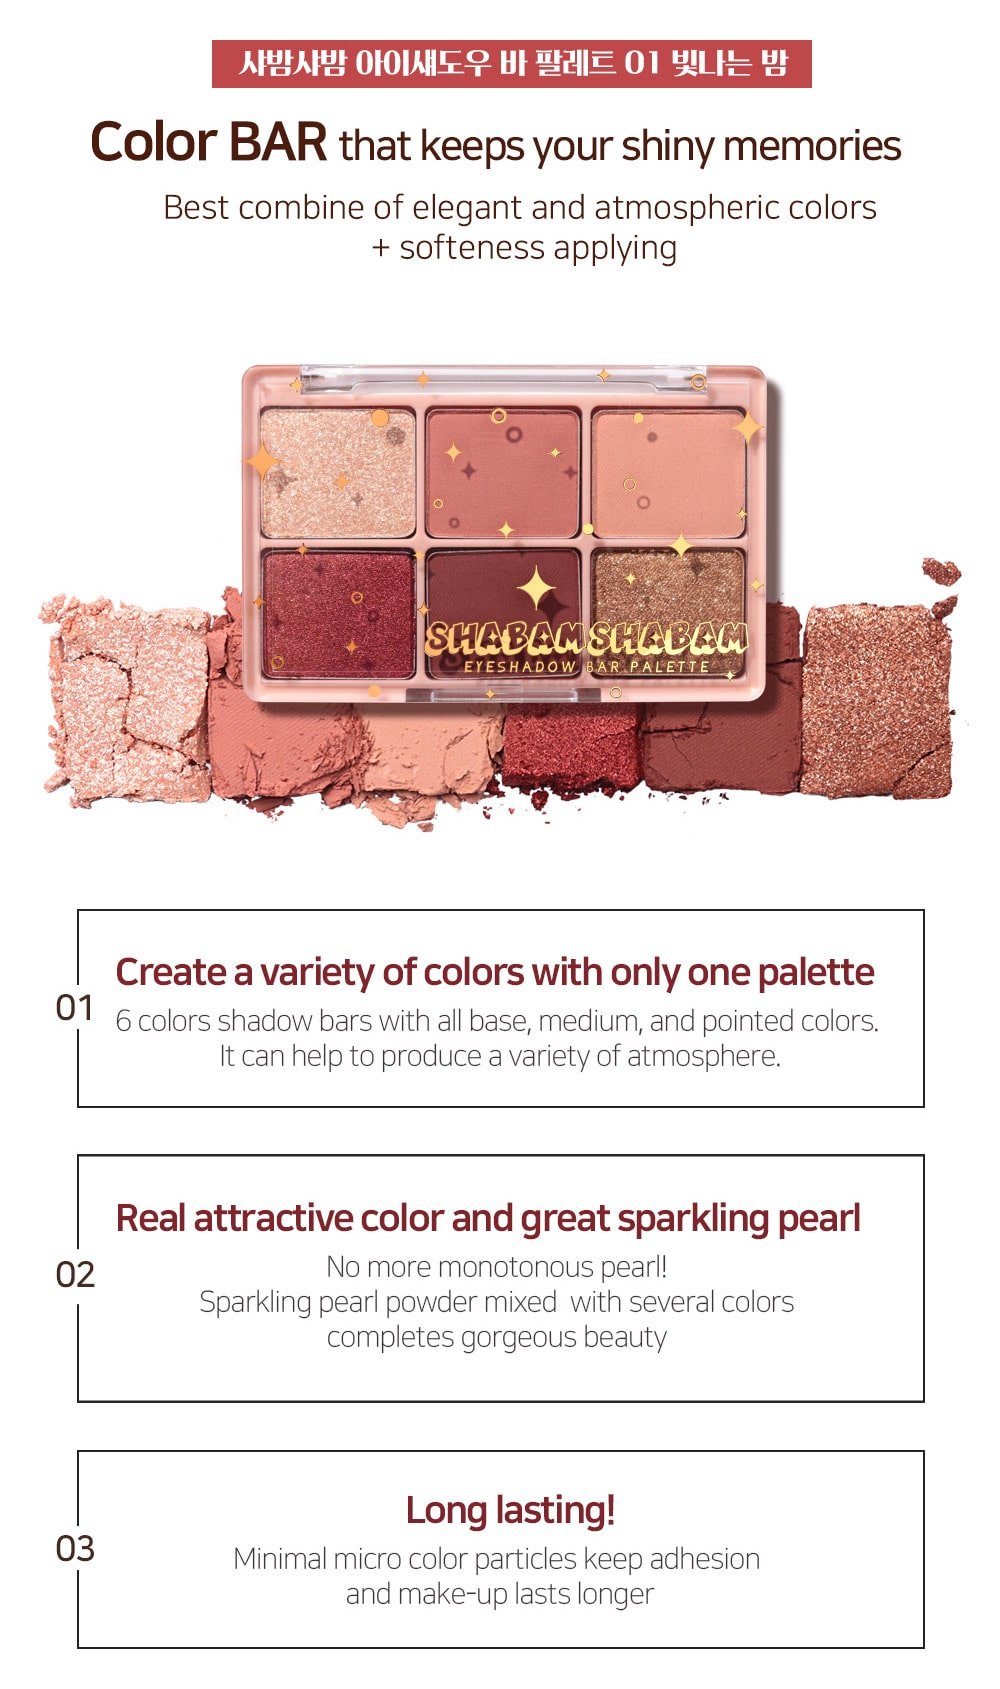 Shabam Shabam Eyeshadow Palette - Features